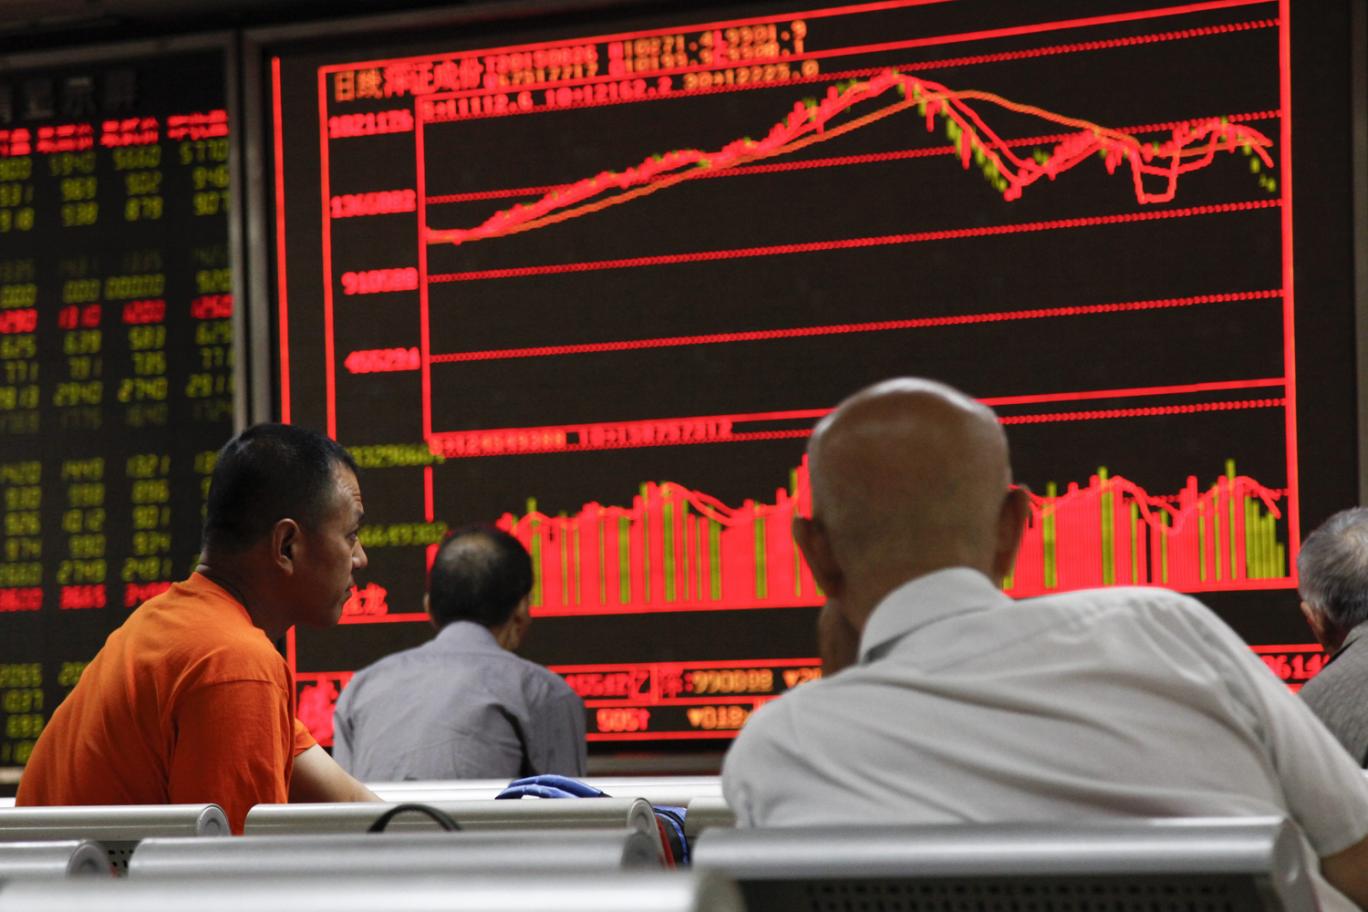 خبراء استثمار يتوقعون أزمة مالية عالمية جديدة خلال 3 سنوات